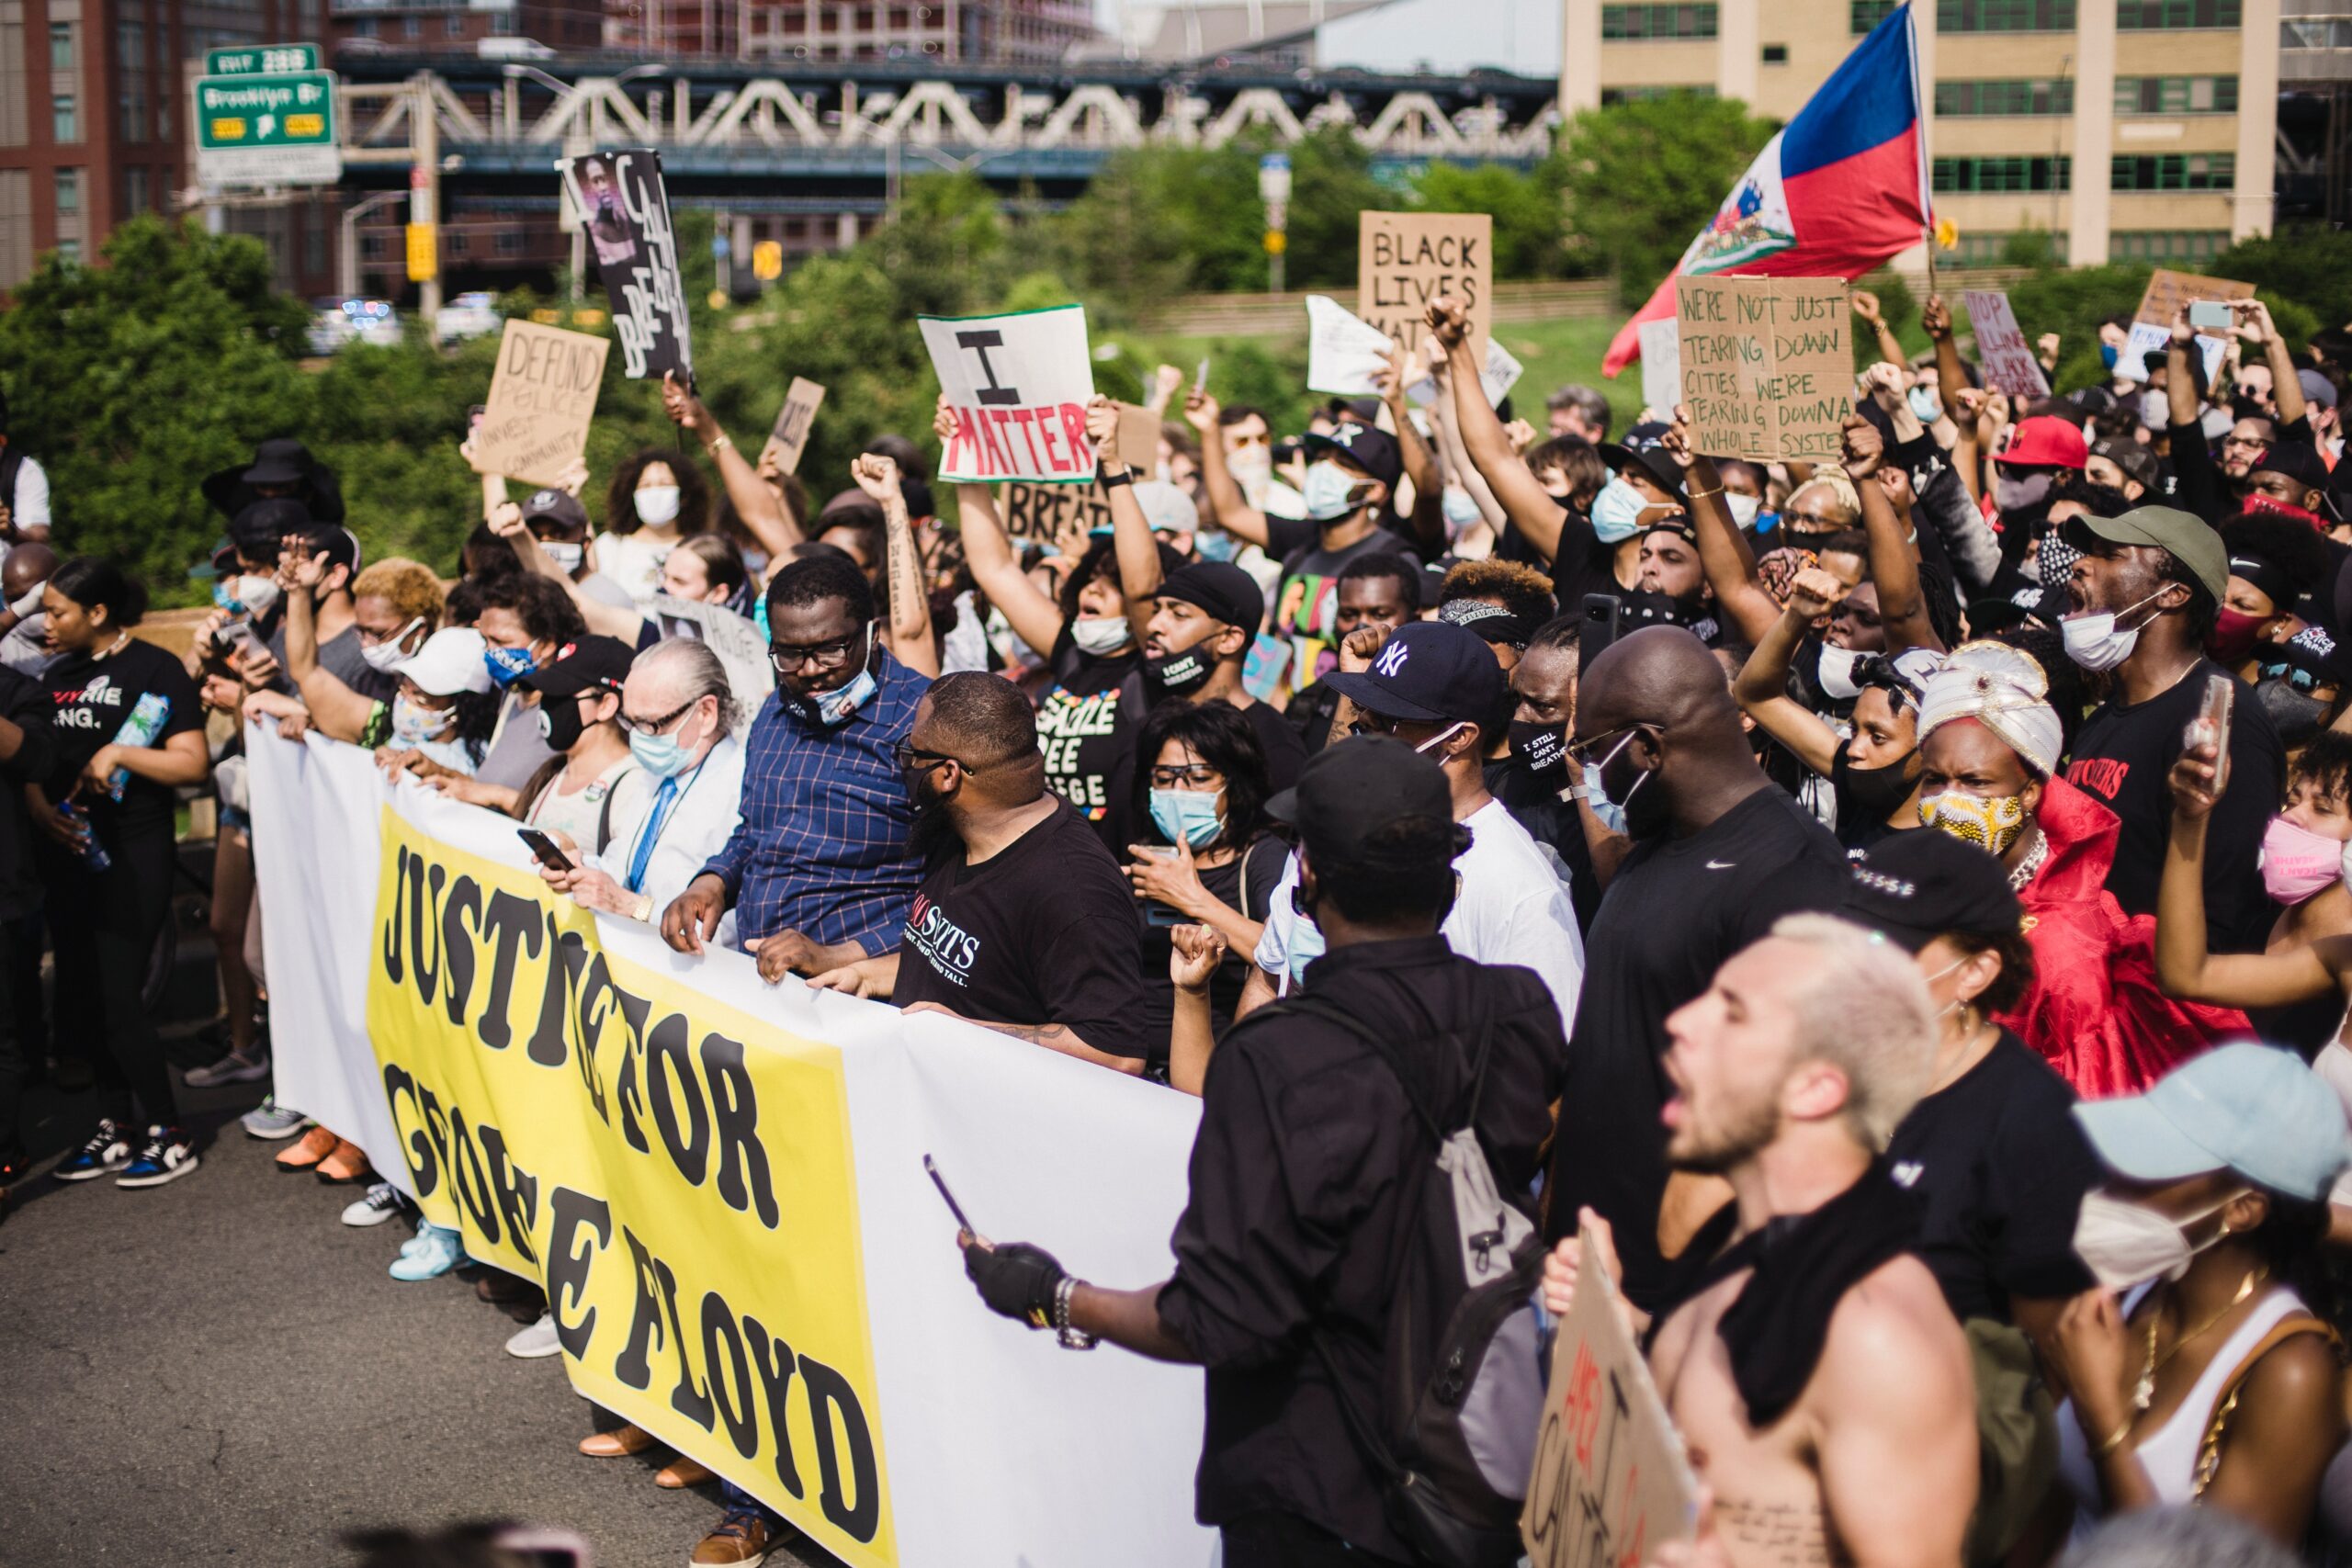 A large Black Lives Matter protest